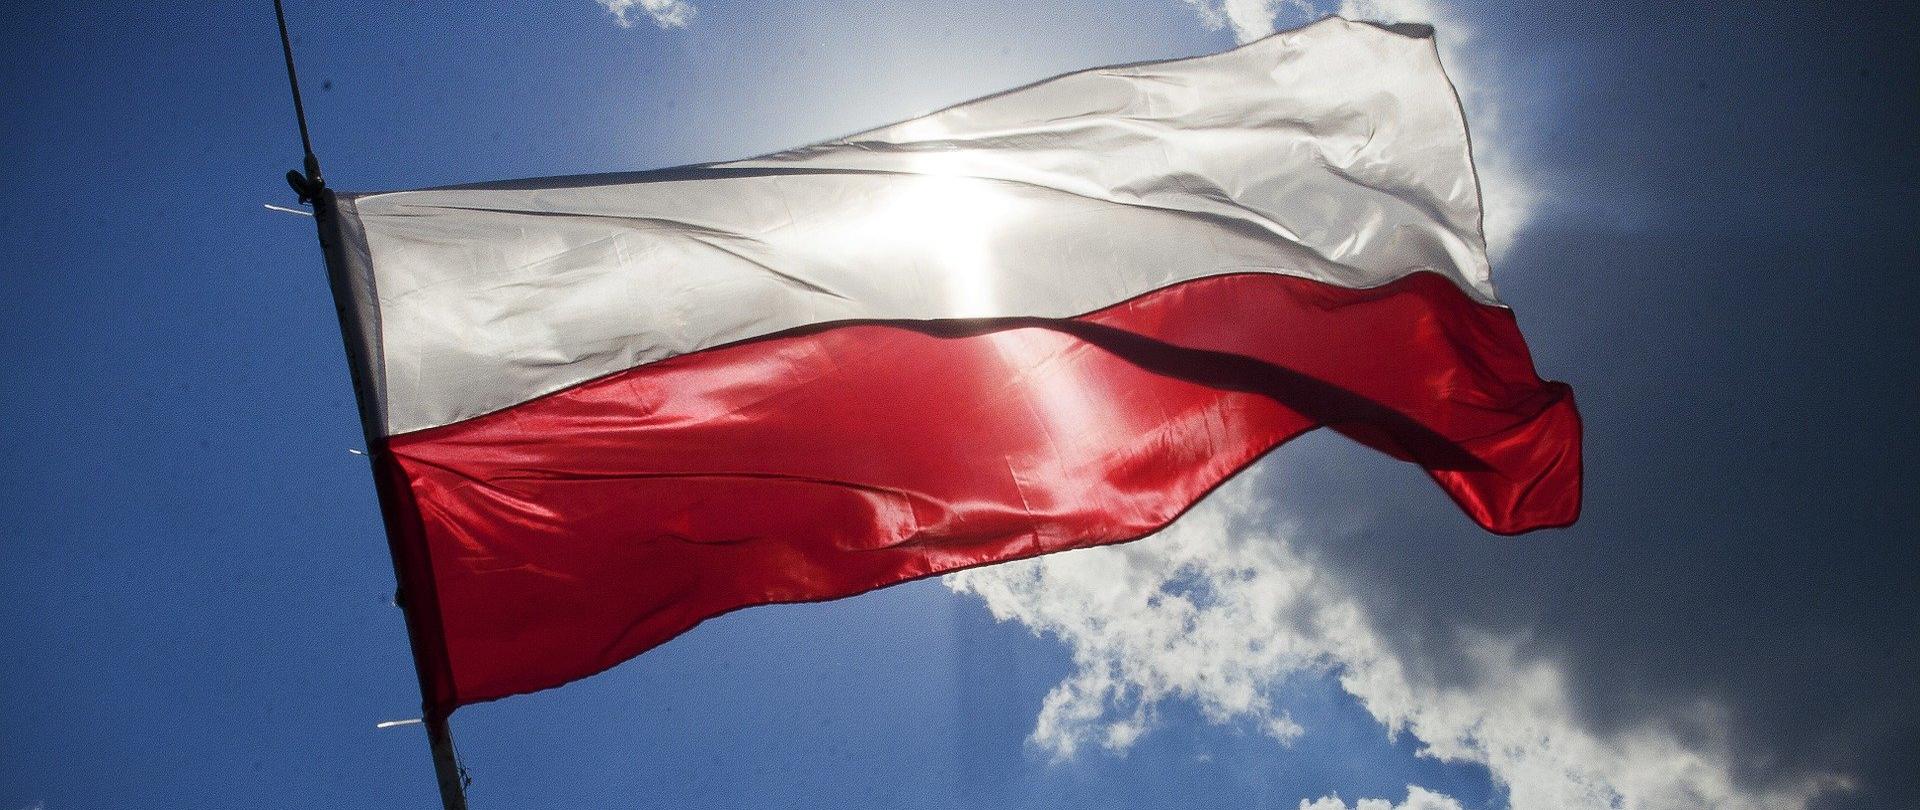 Zdjęcie przedstawia dużą, powiewającą na wietrze biało-czerwoną flagę RP. W tle błękitne niebo oraz chmury.